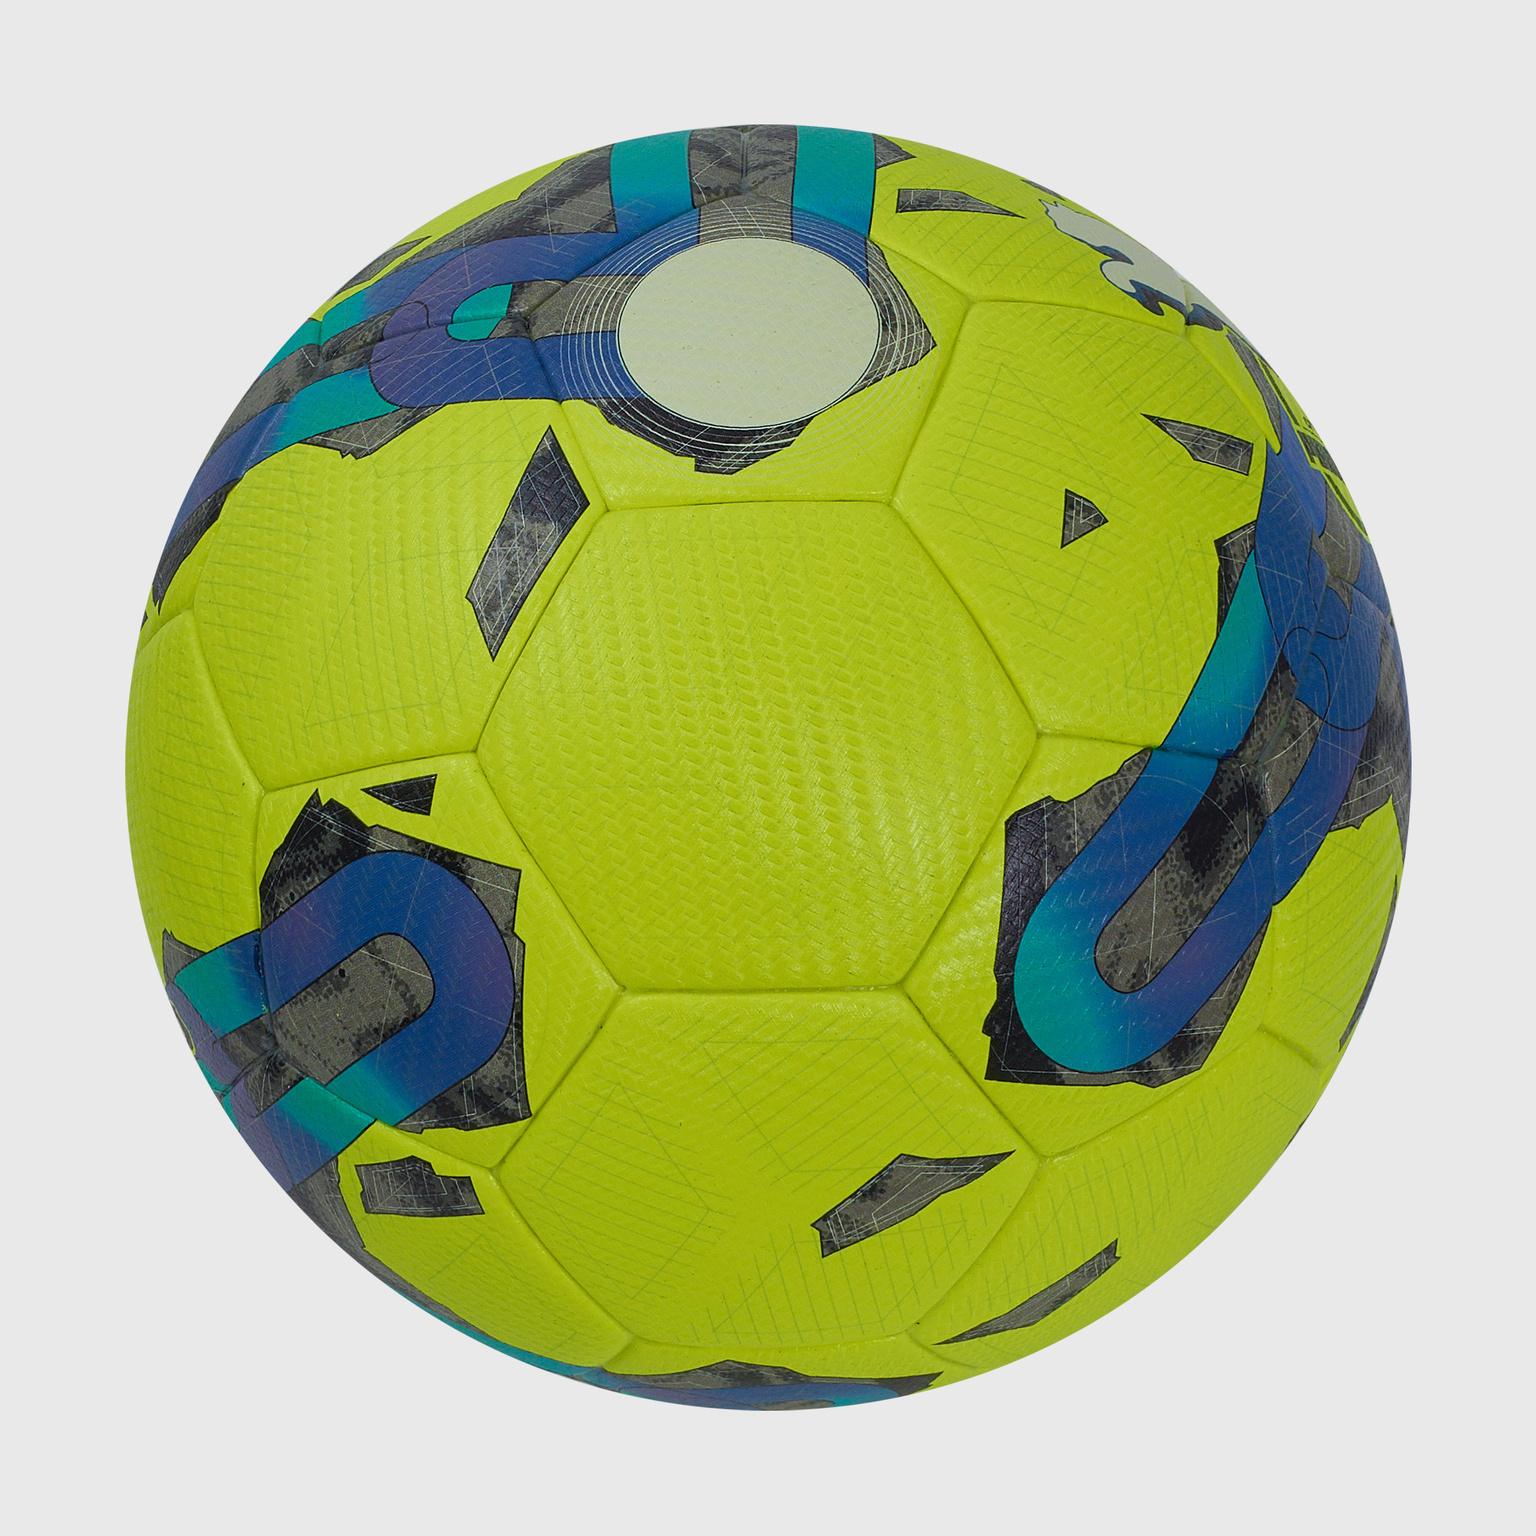 Футбольный мяч Puma Orbita 2 TB FQP 08377502